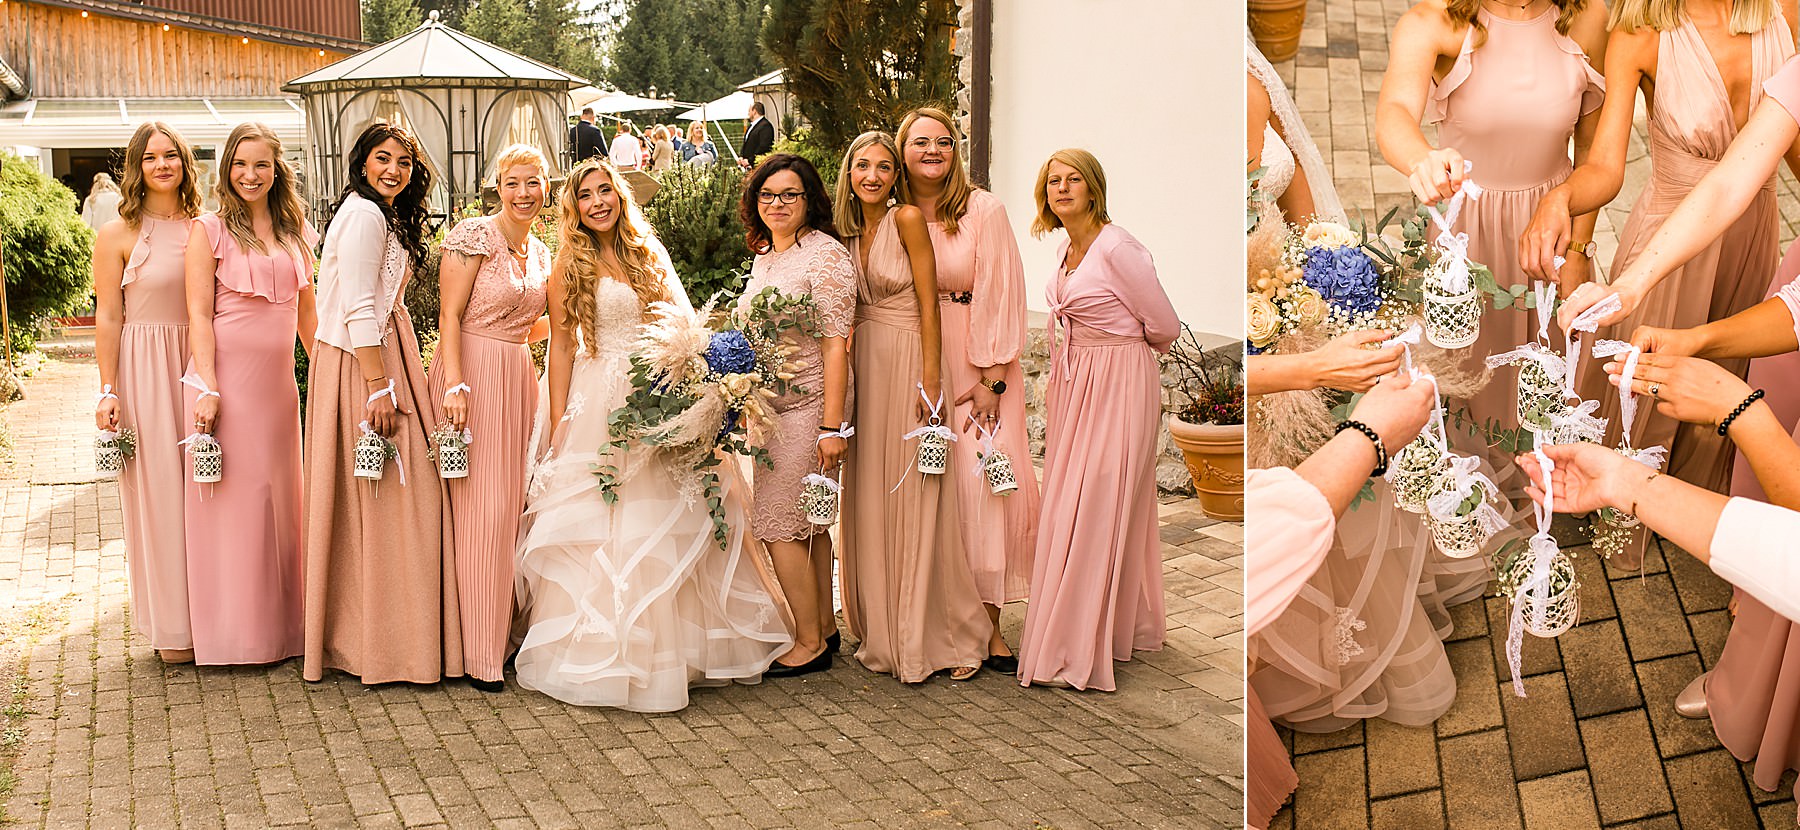 Die Braut und ihre Brautjungfern fotografiert von Hochzeitsfotografin Daniela Knipper